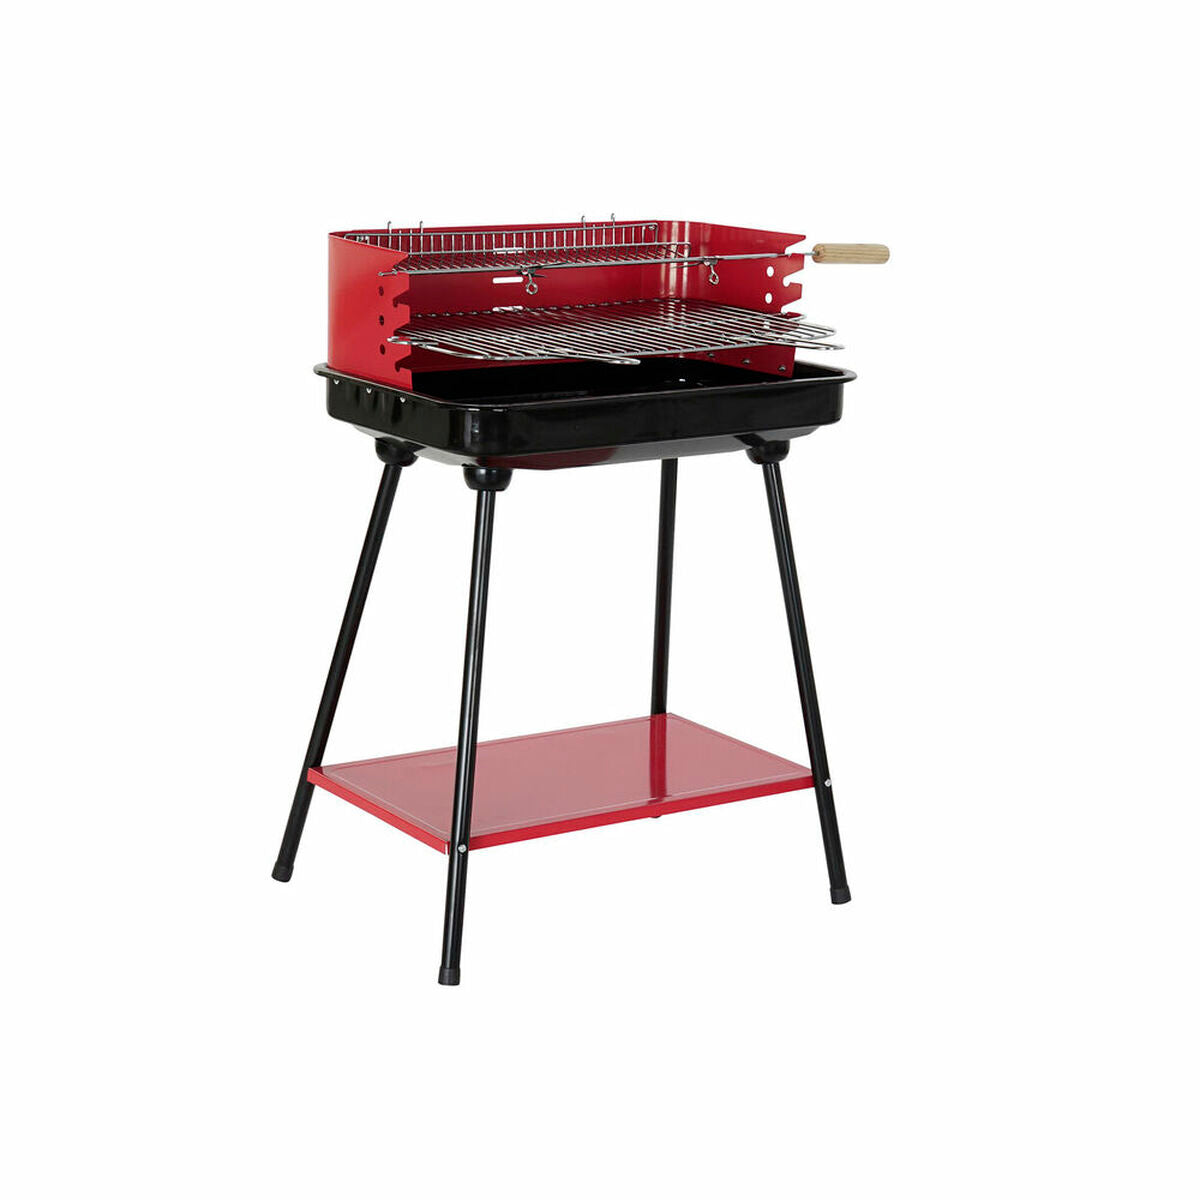 Houtskoolbarbecue met Poten DKD Home Decor Rood Zwart Staal 53 x 37 x 80 cm (53 x 37 x 80 cm)